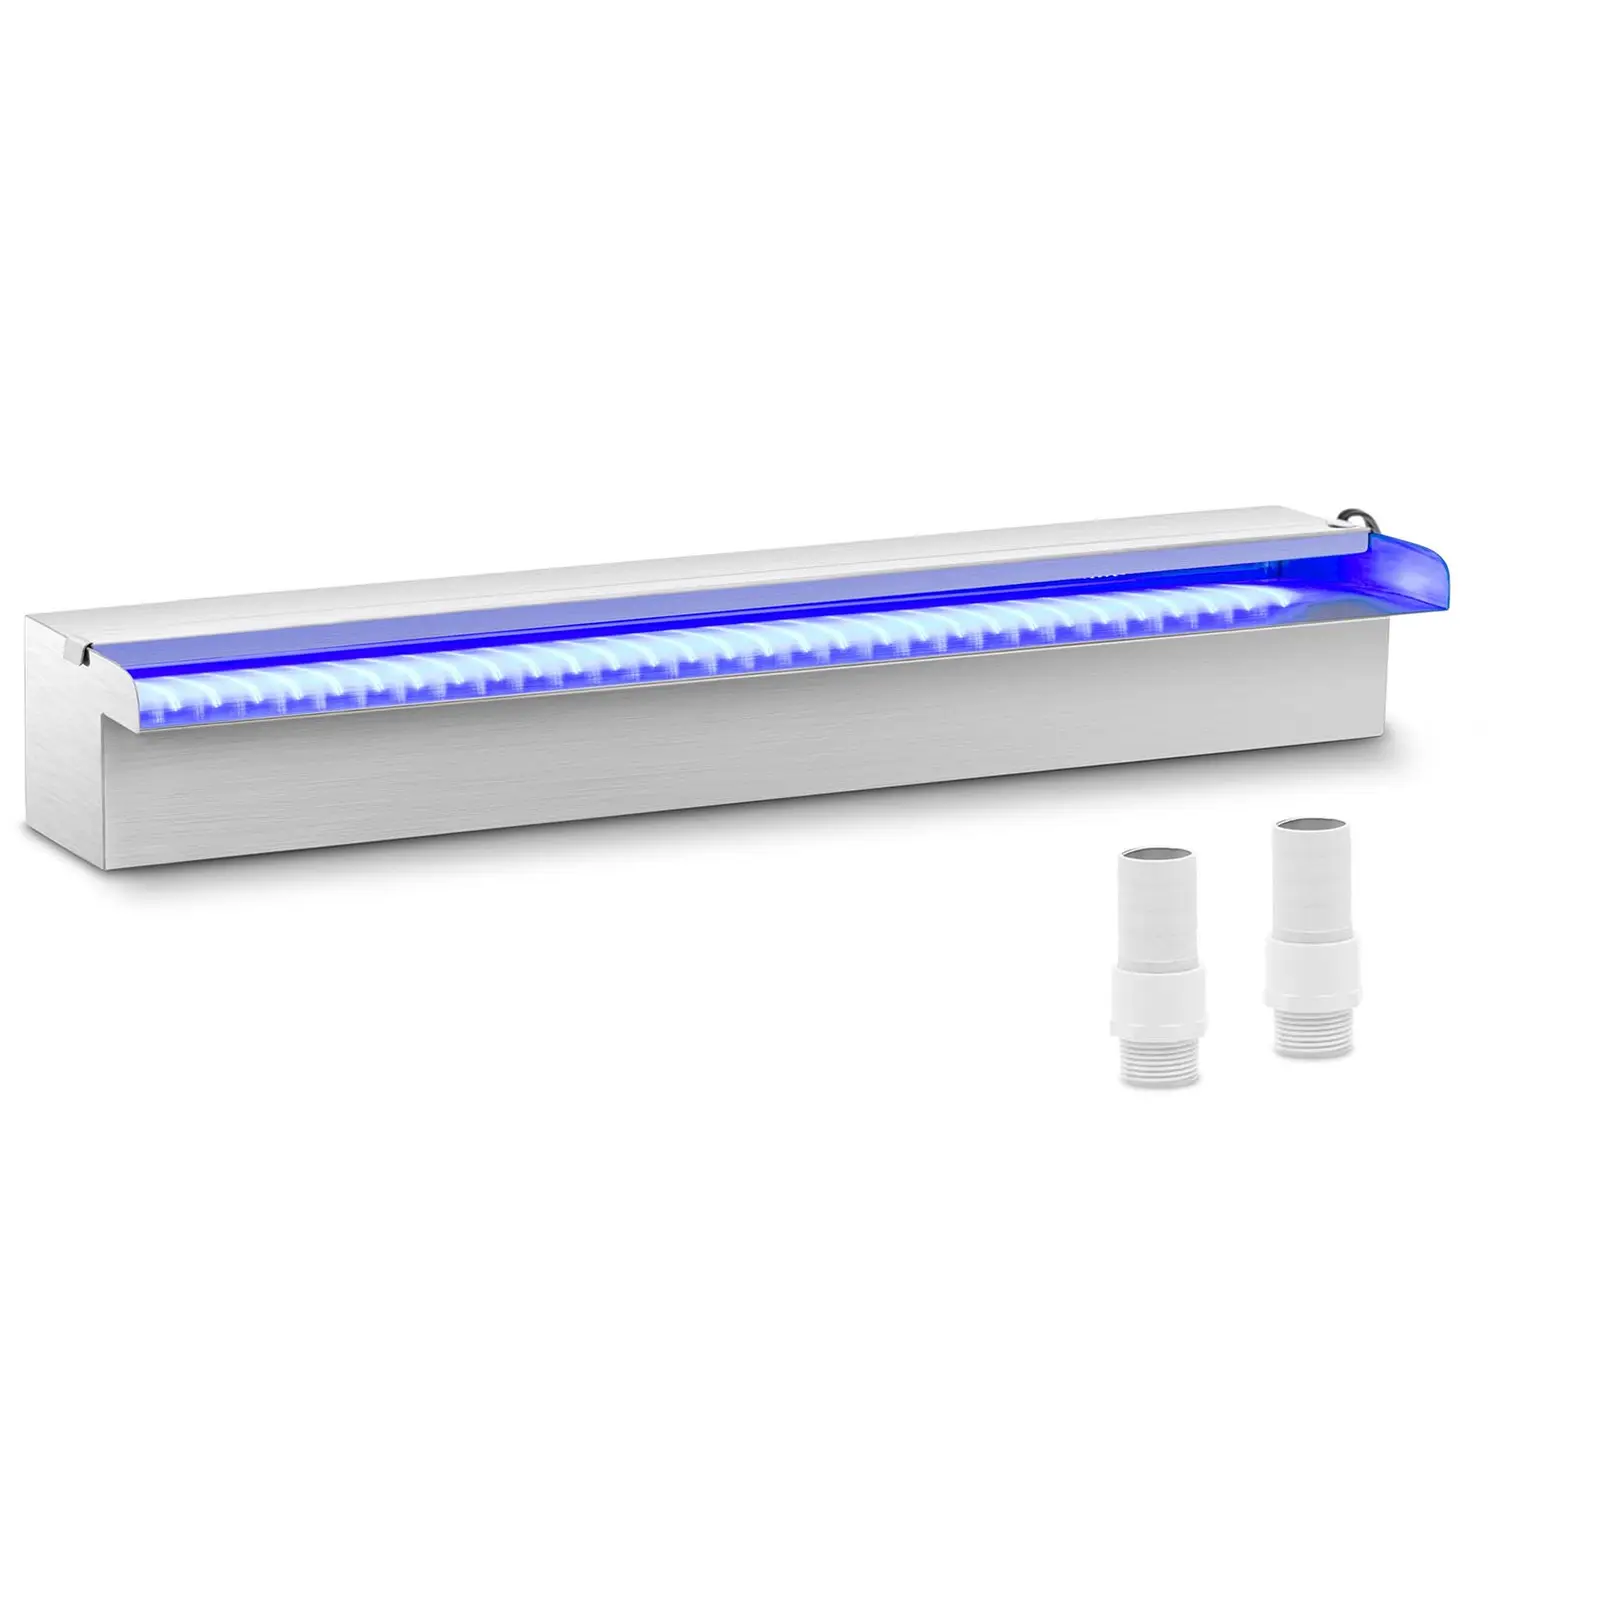 Ντους υπερχείλισης - 60 cm - Φωτισμός LED - Μπλε / Λευκό